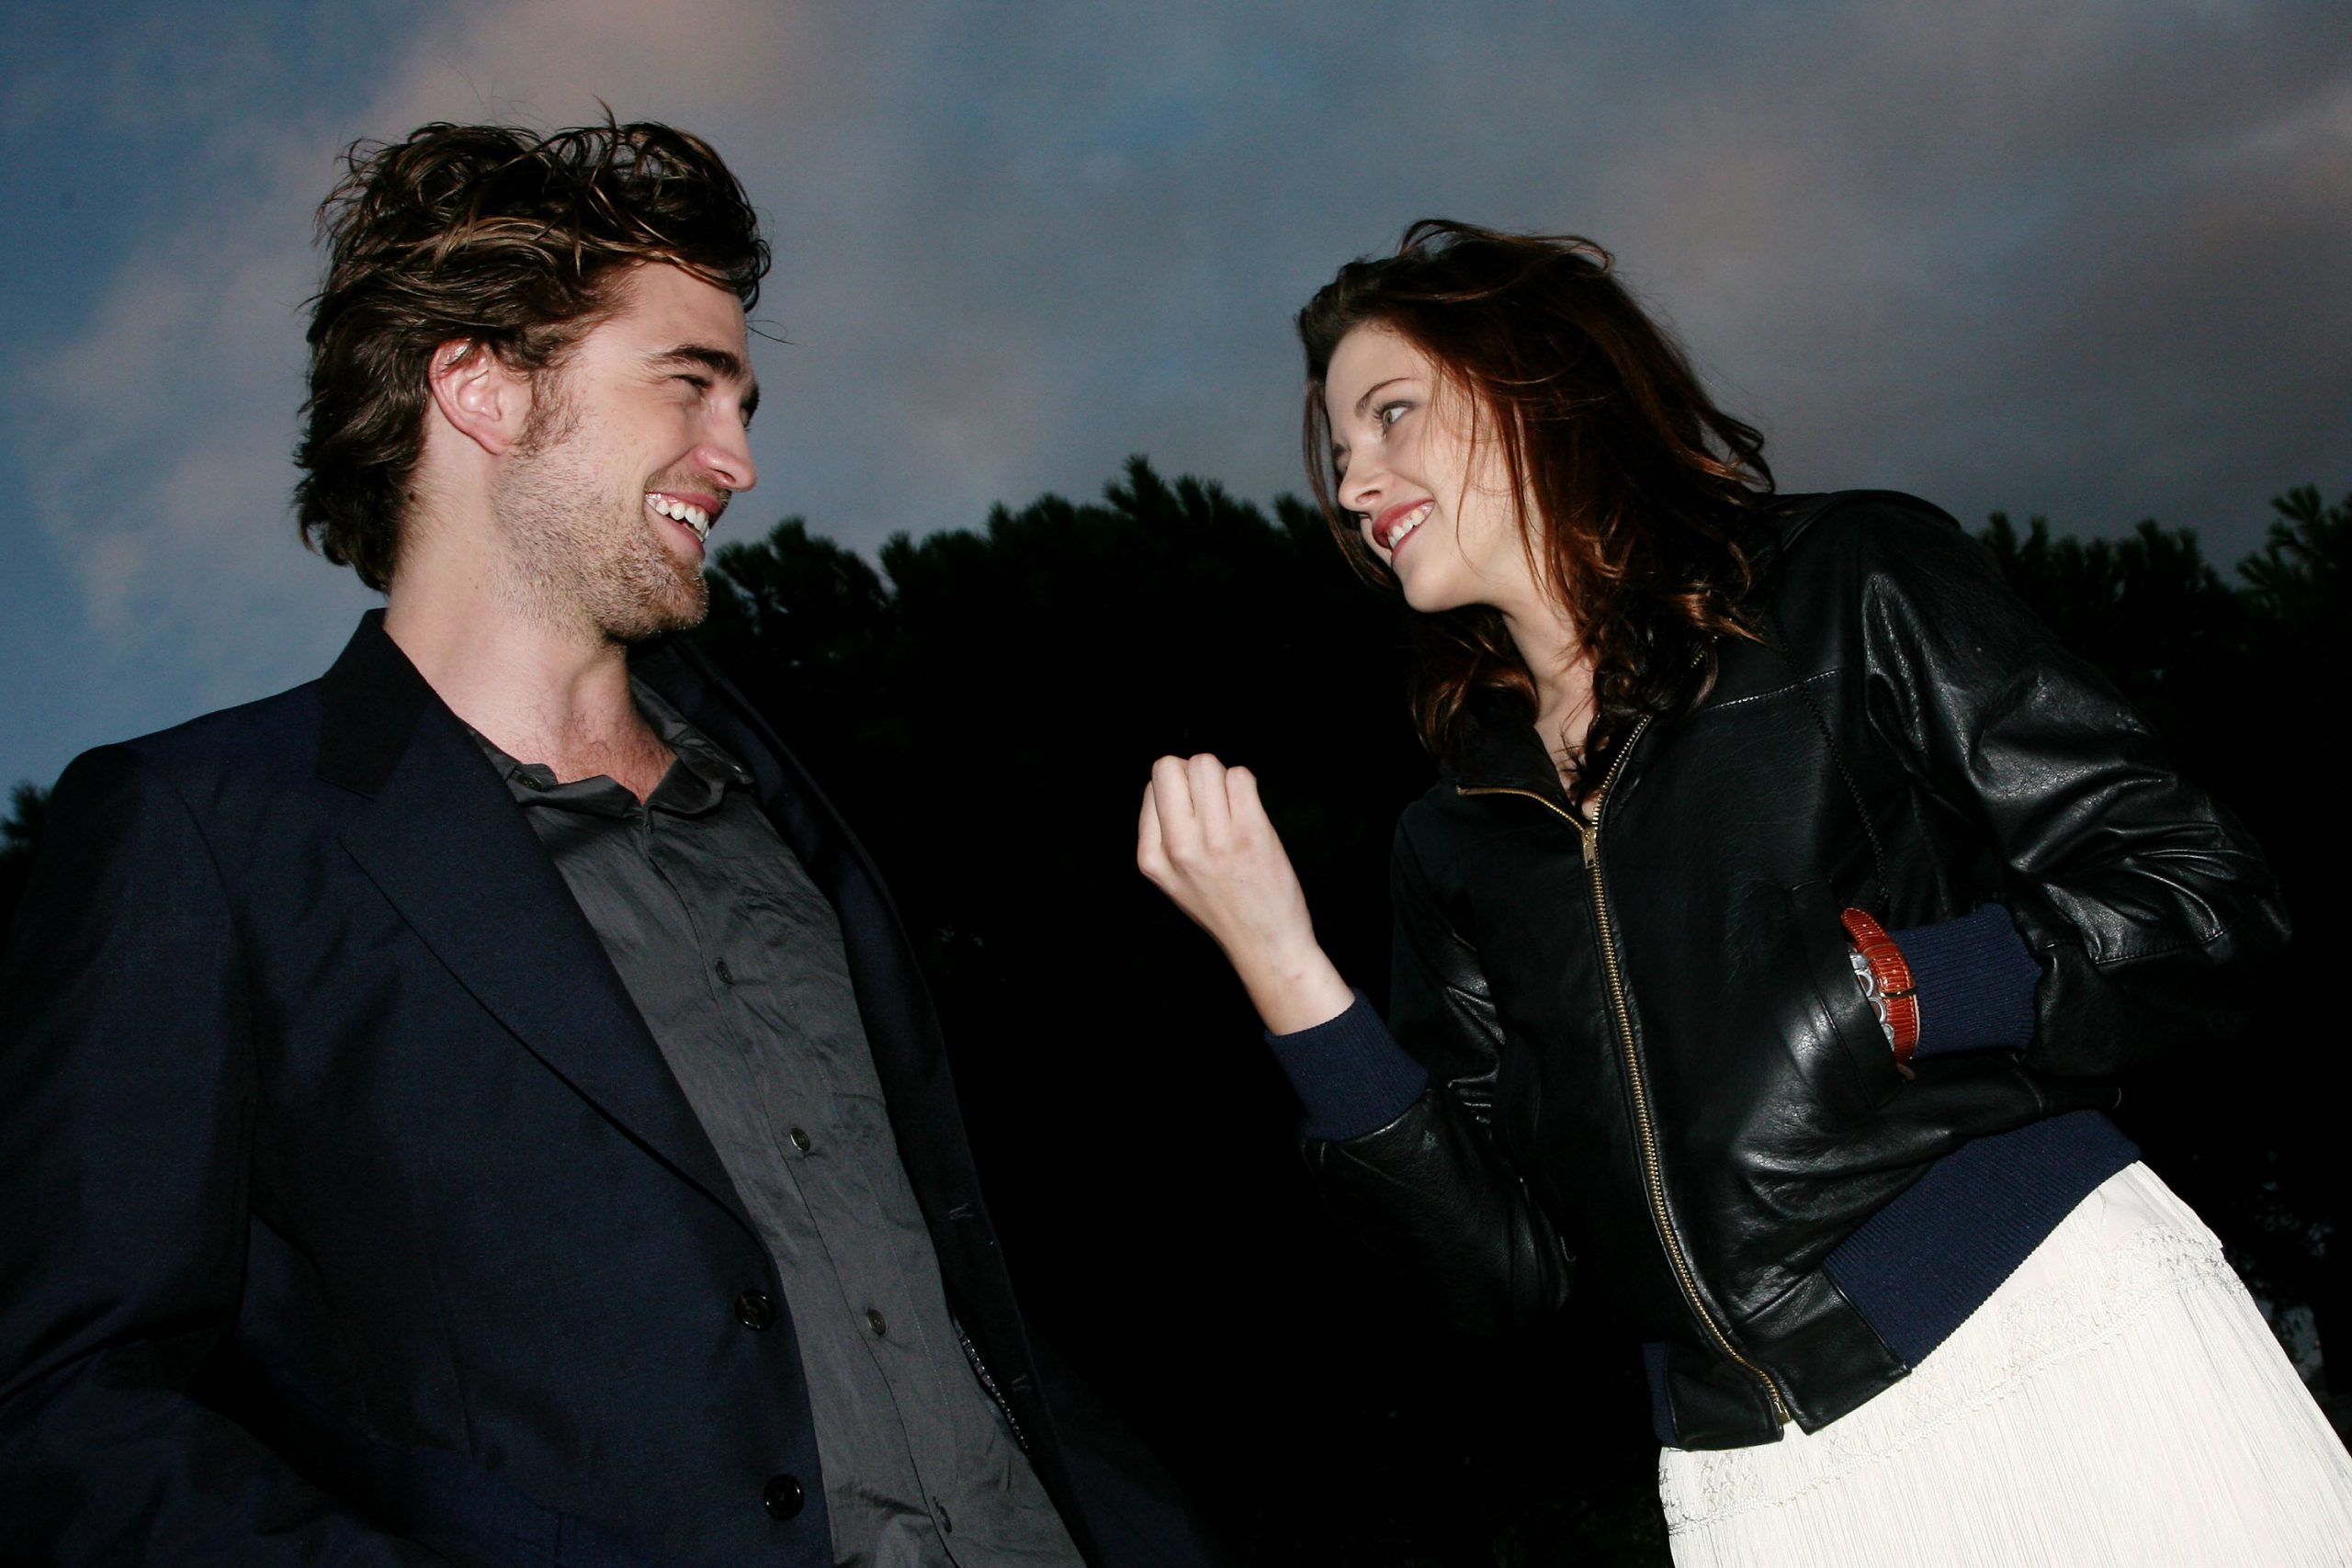 Kristen Stewart jokingly shows Robert Pattinson her fist during the premiere of 'Twilight' 